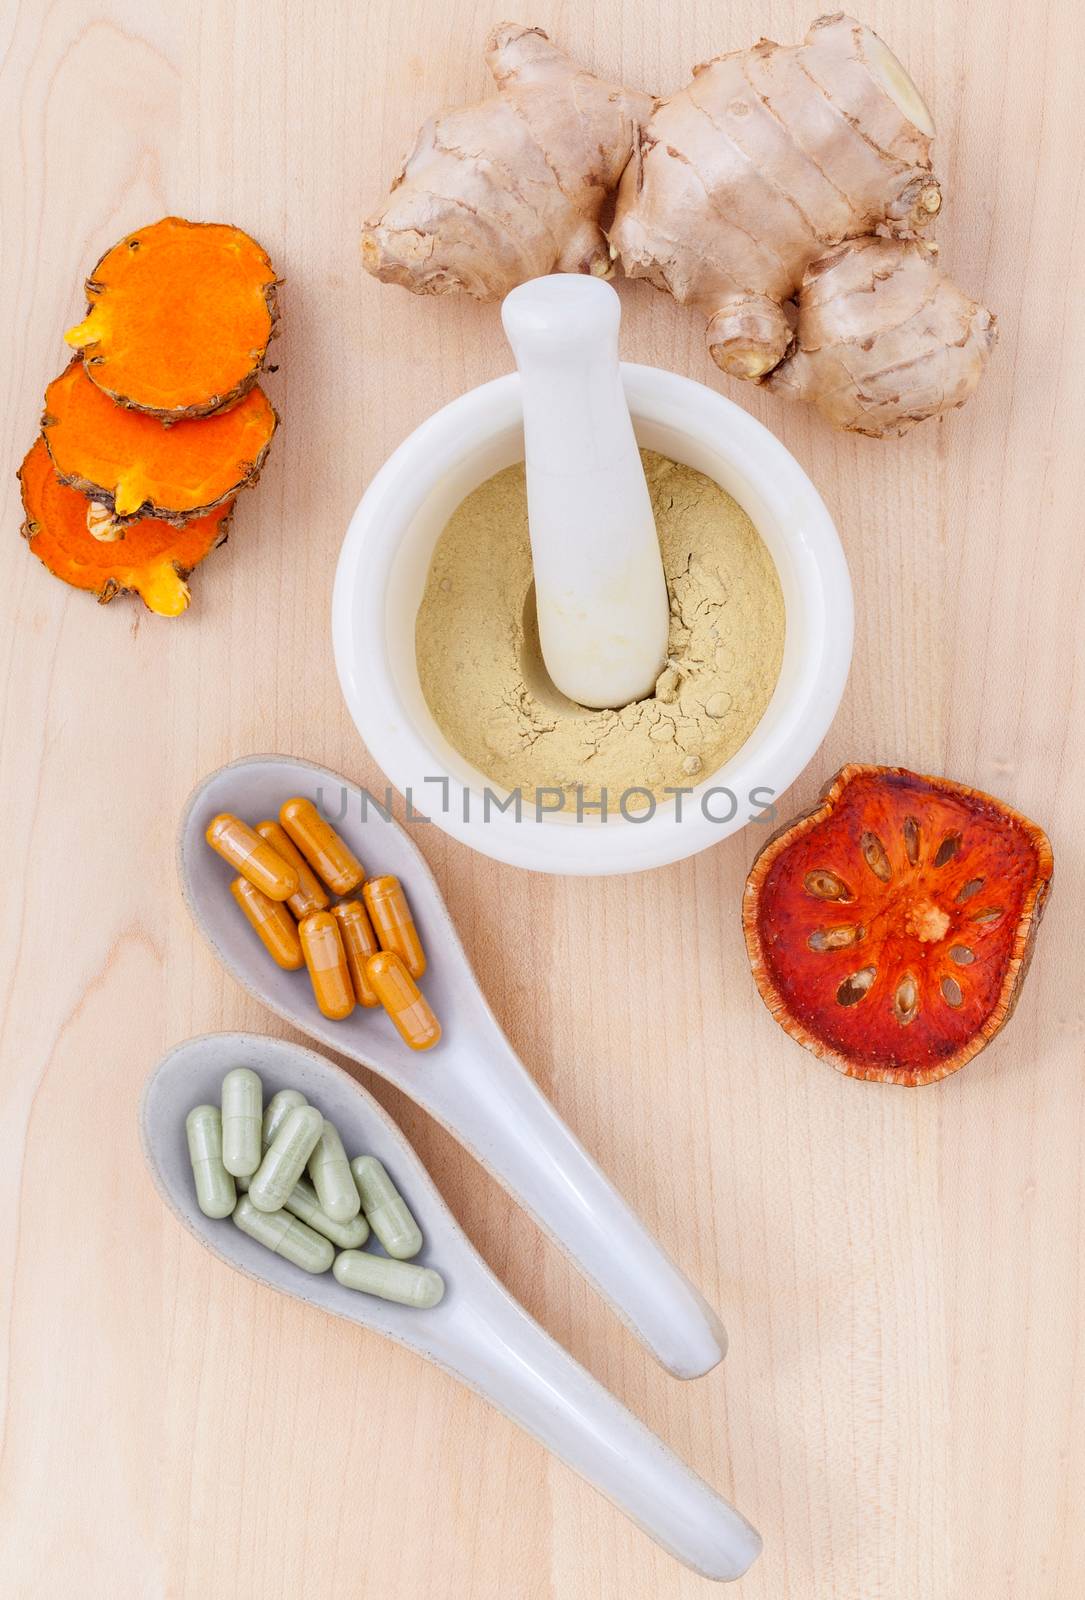 Alternative health care fresh herbal  ,dry and herbal capsule wi by kerdkanno